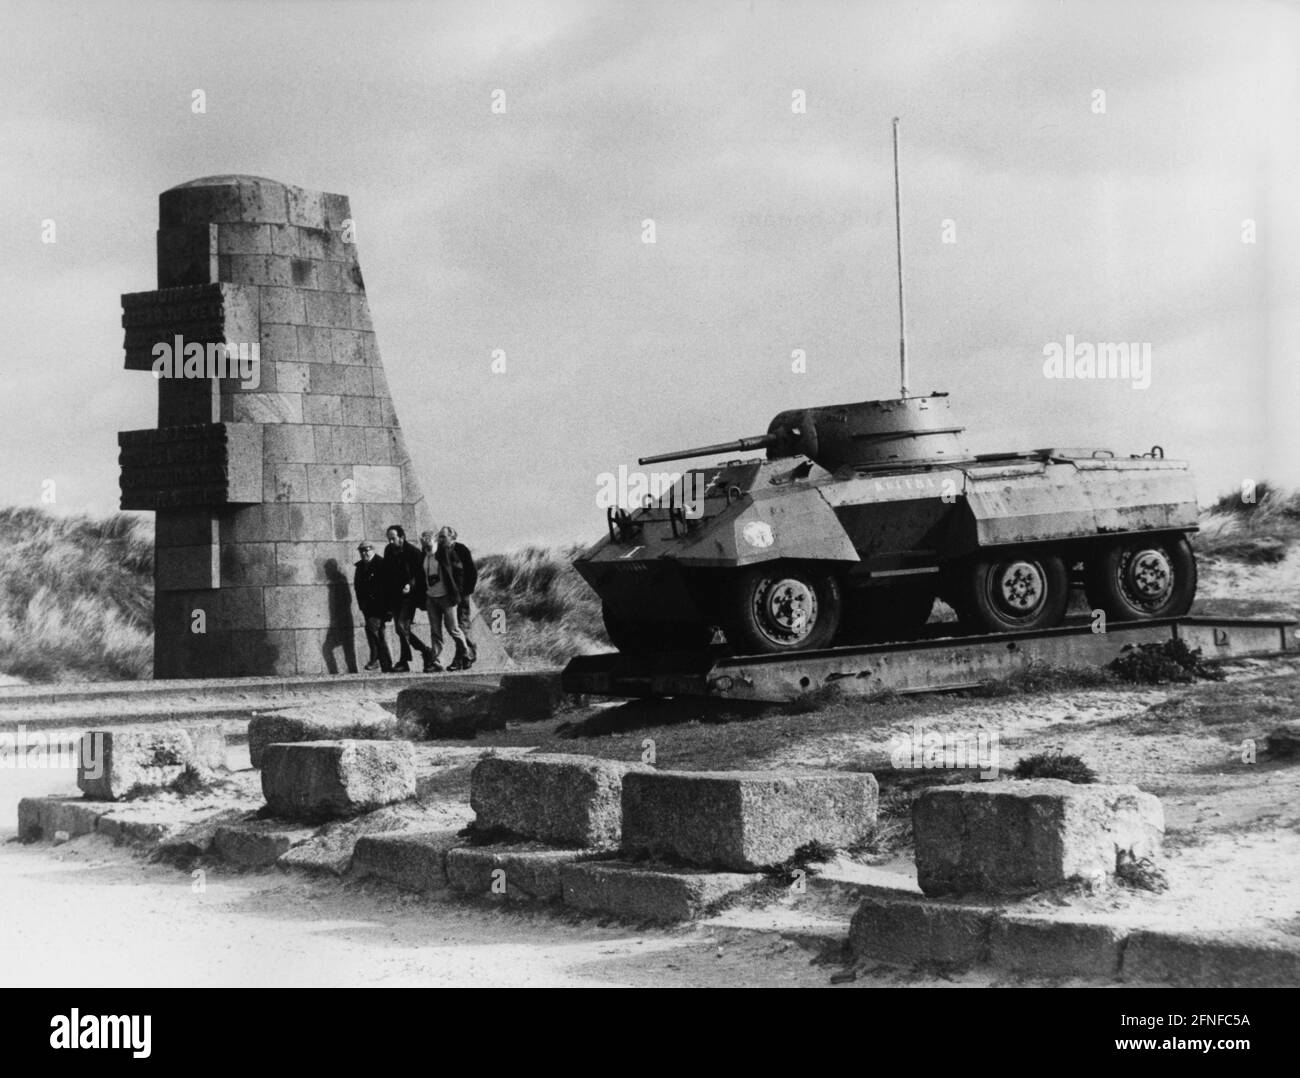 "La colonna commemorativa del D-Day Port-en-Bassin, accanto ad essa un veicolo da ricognizione blindato americano del tipo M8 ''Greyhound'', che apparteneva alla divisione francese blindée. [traduzione automatizzata]" Foto Stock